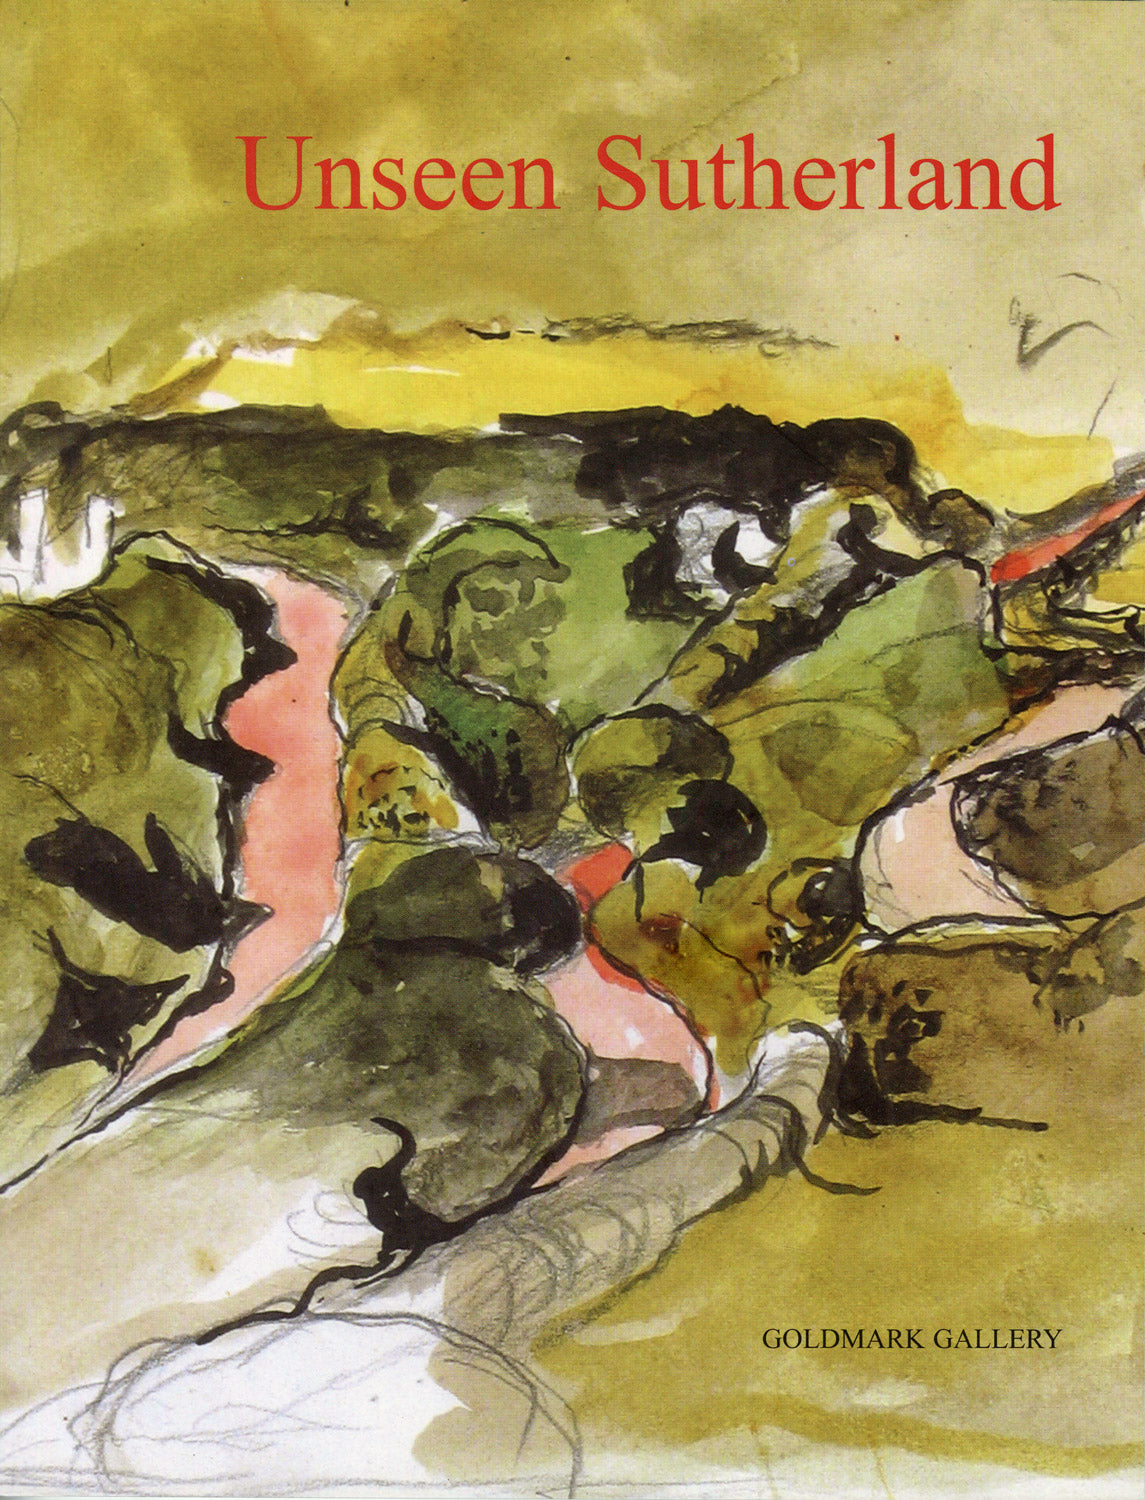 Unseen Sutherland